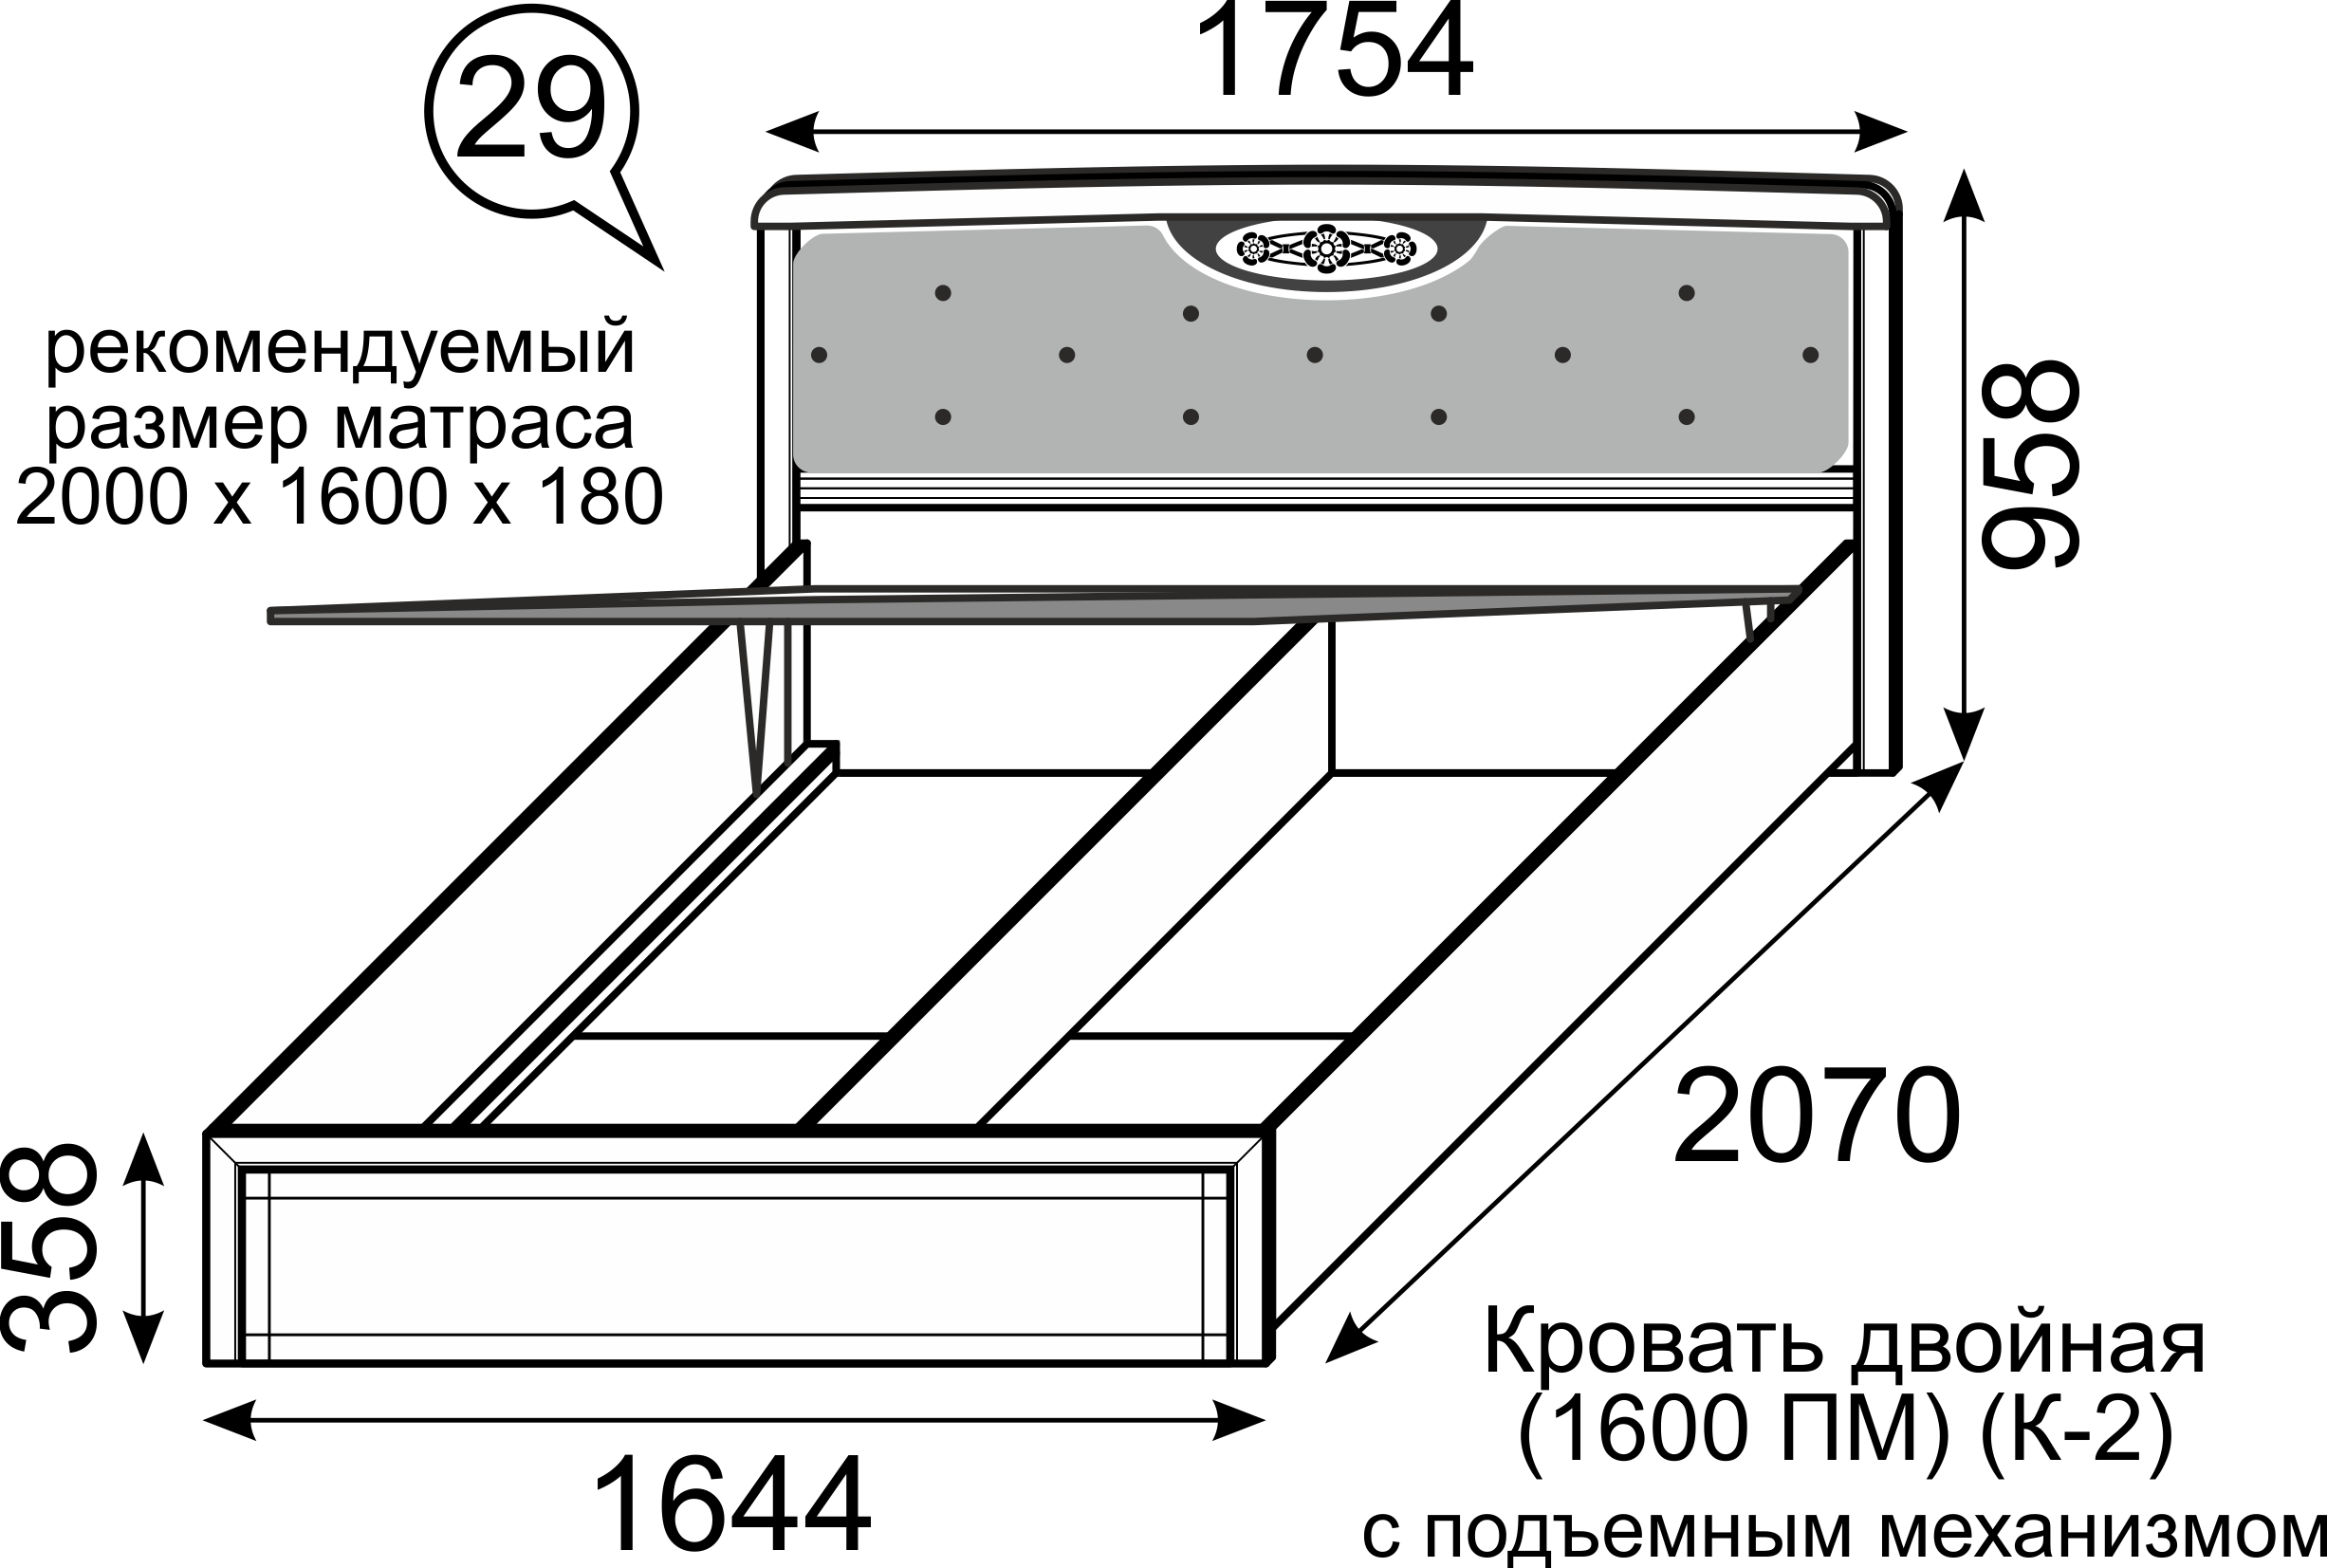 Двуспальная кровать своими руками из дсп чертежи фото: Кровать из ДСП своими руками: чертежи и размеры, схемы и проекты, эскизы, свойства